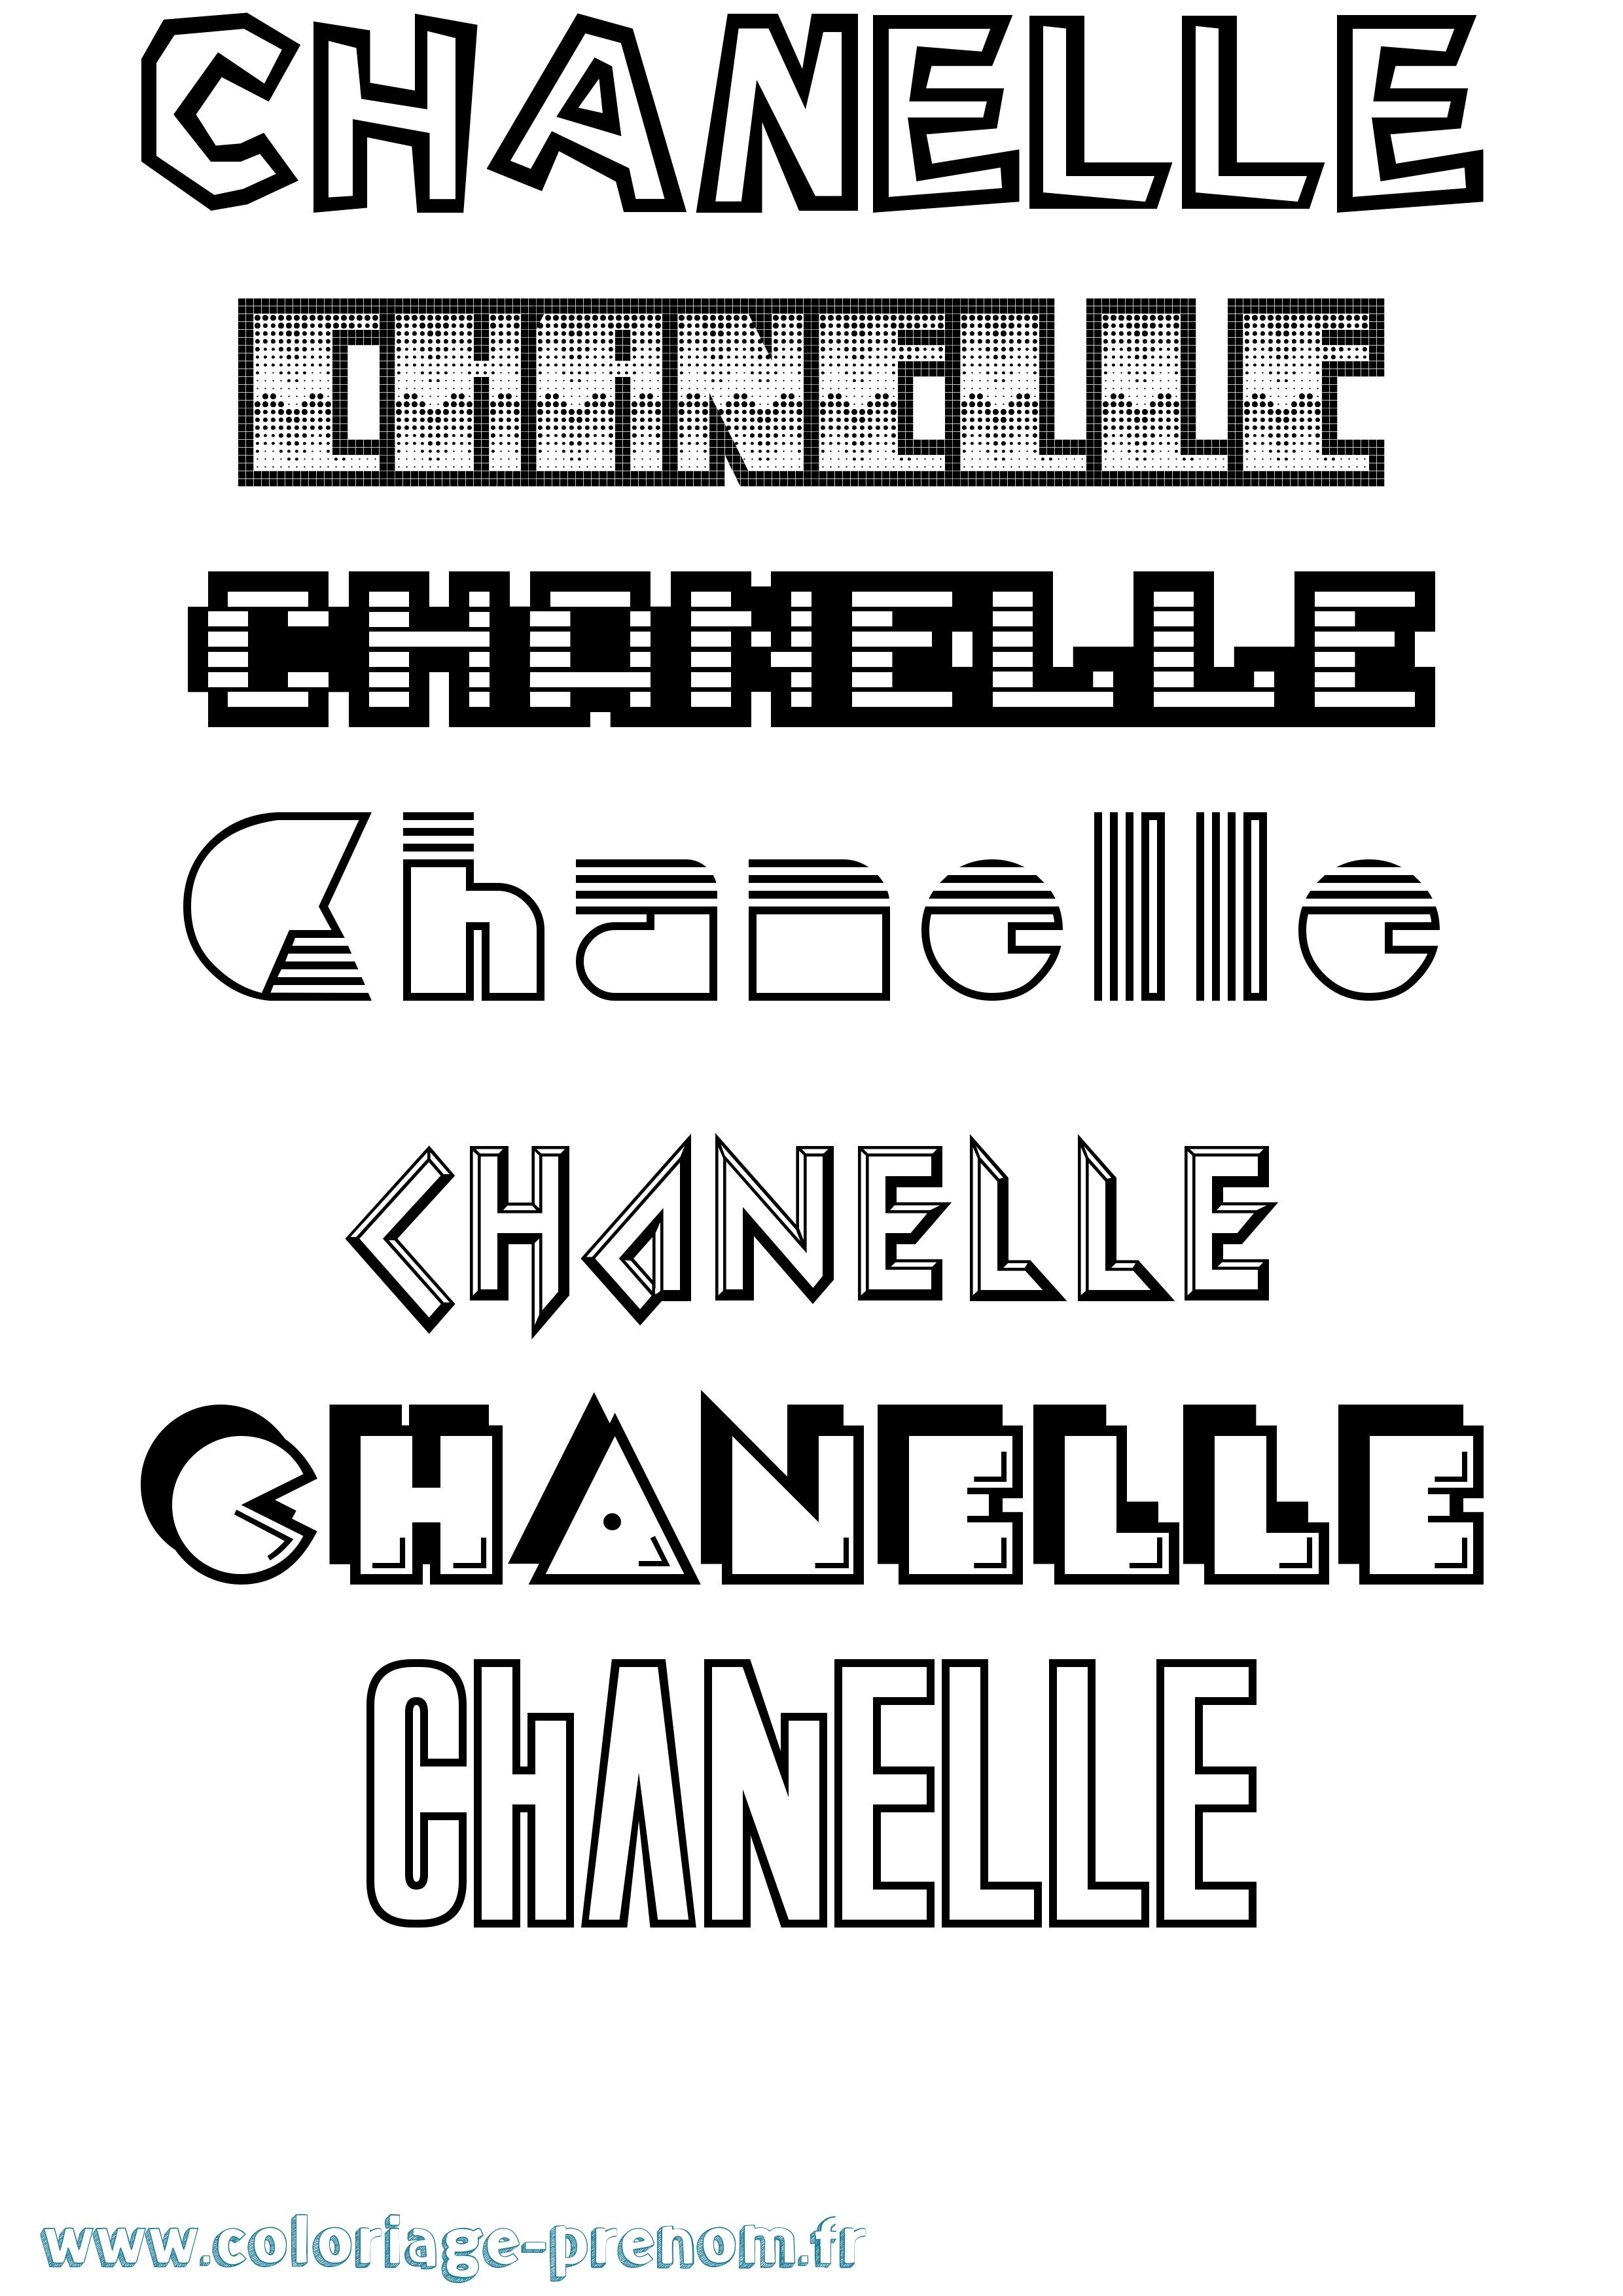 Coloriage prénom Chanelle Jeux Vidéos